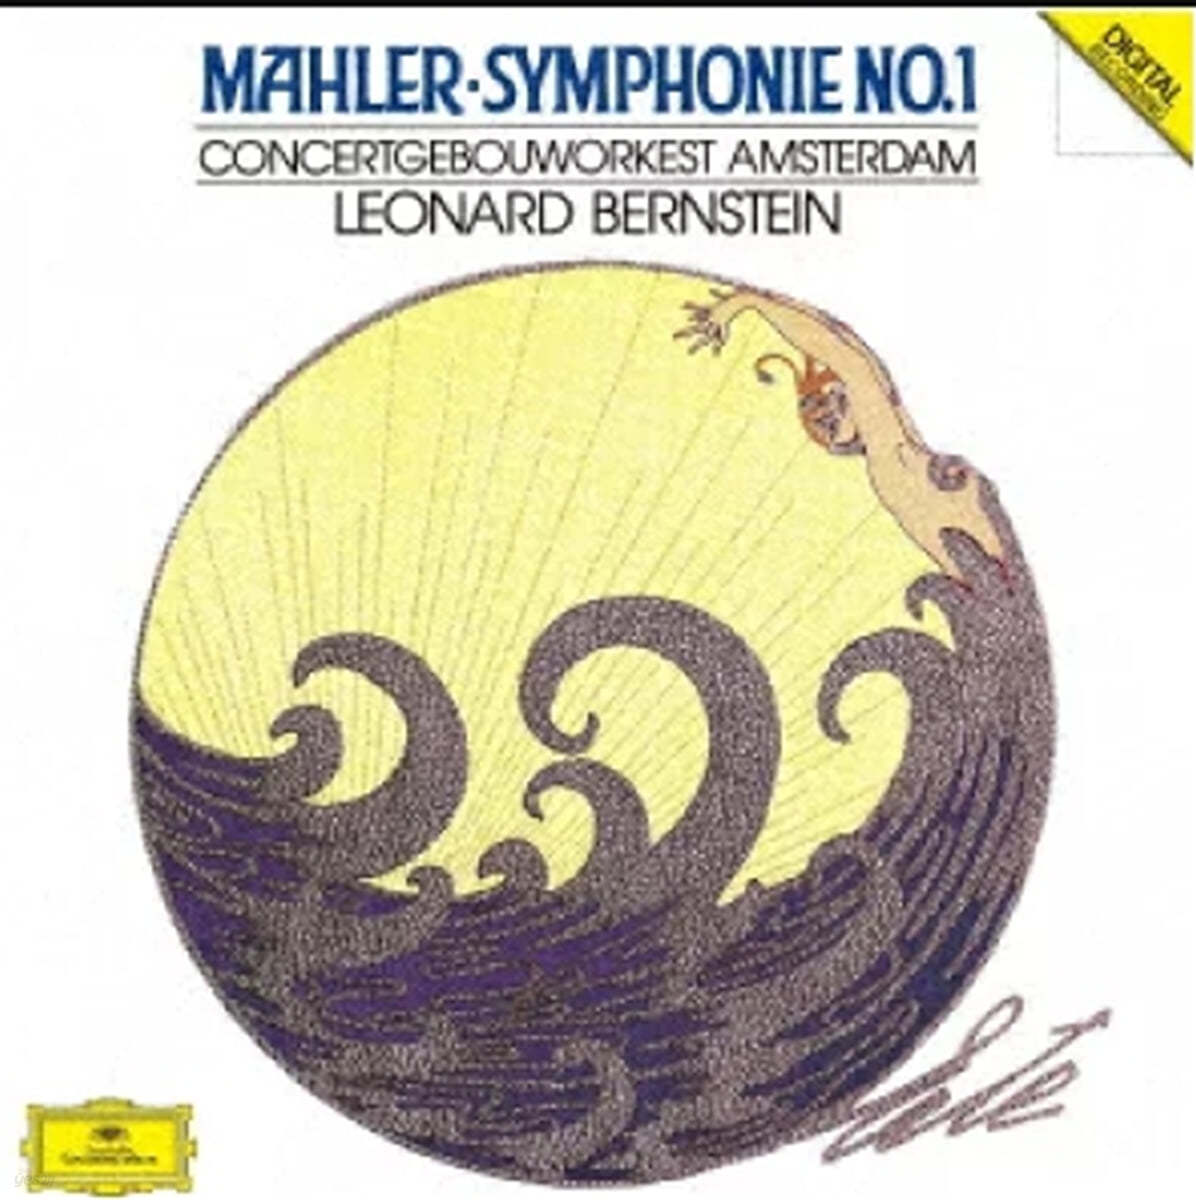 Leonard Bernstein 말러: 교향곡 1번 (Mahler: Symphony No. 1 In D Major)